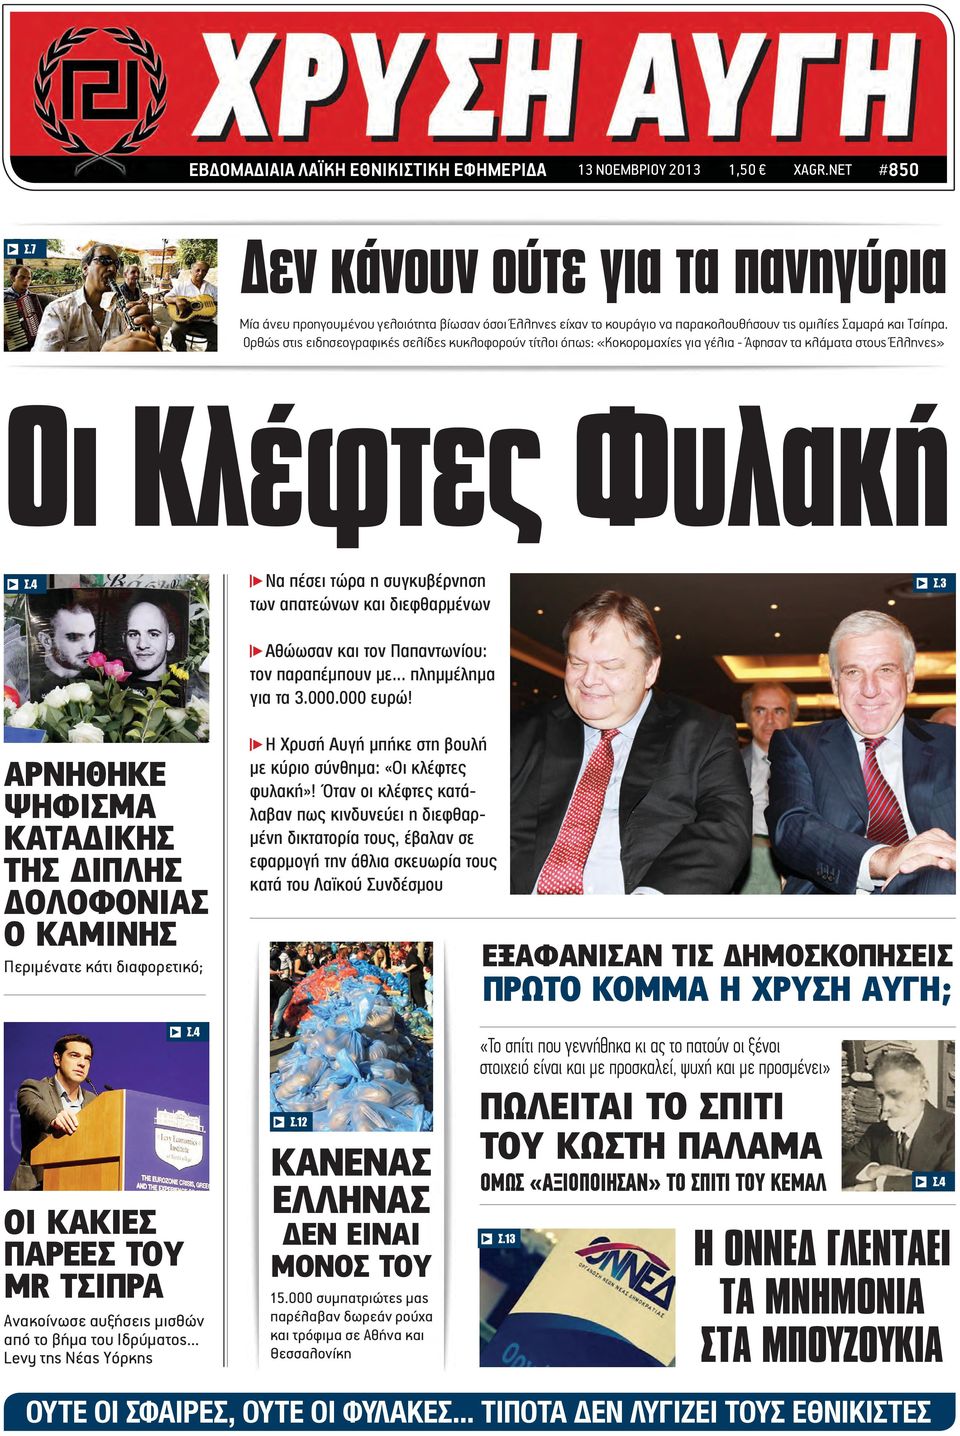 Ορθώς στις ειδησεογραφικές σελίδες κυκλοφορούν τίτλοι όπως: «Κοκορομαχίες για γέλια - Άφησαν τα κλάματα στους Έλληνες» Οι Κλέφτες Φυλακή s Σ.